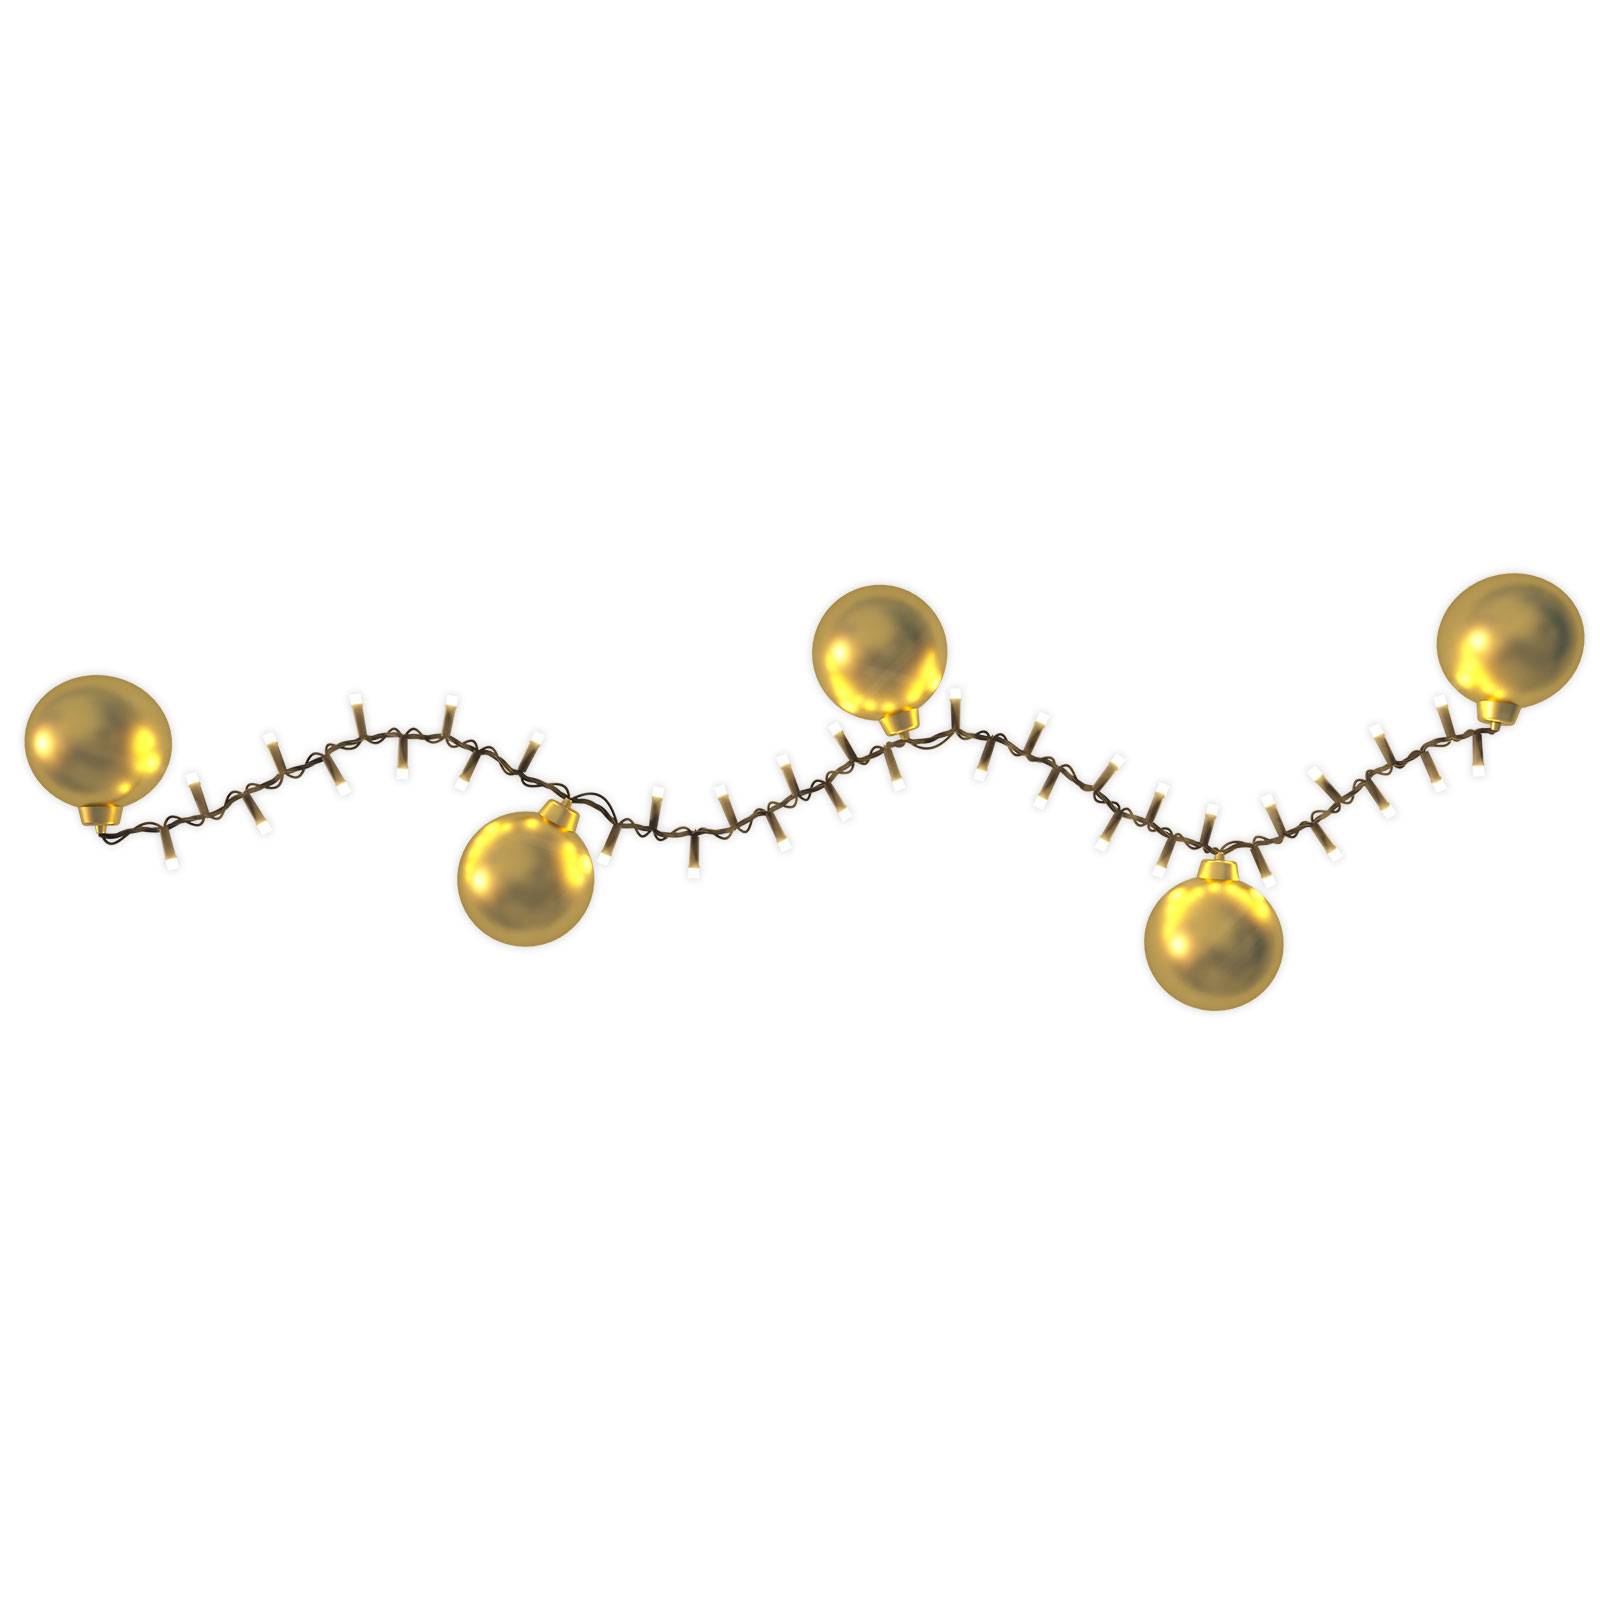 Hemsson LED-Lichterkette 2in1, Champagne gold, 140 LEDs